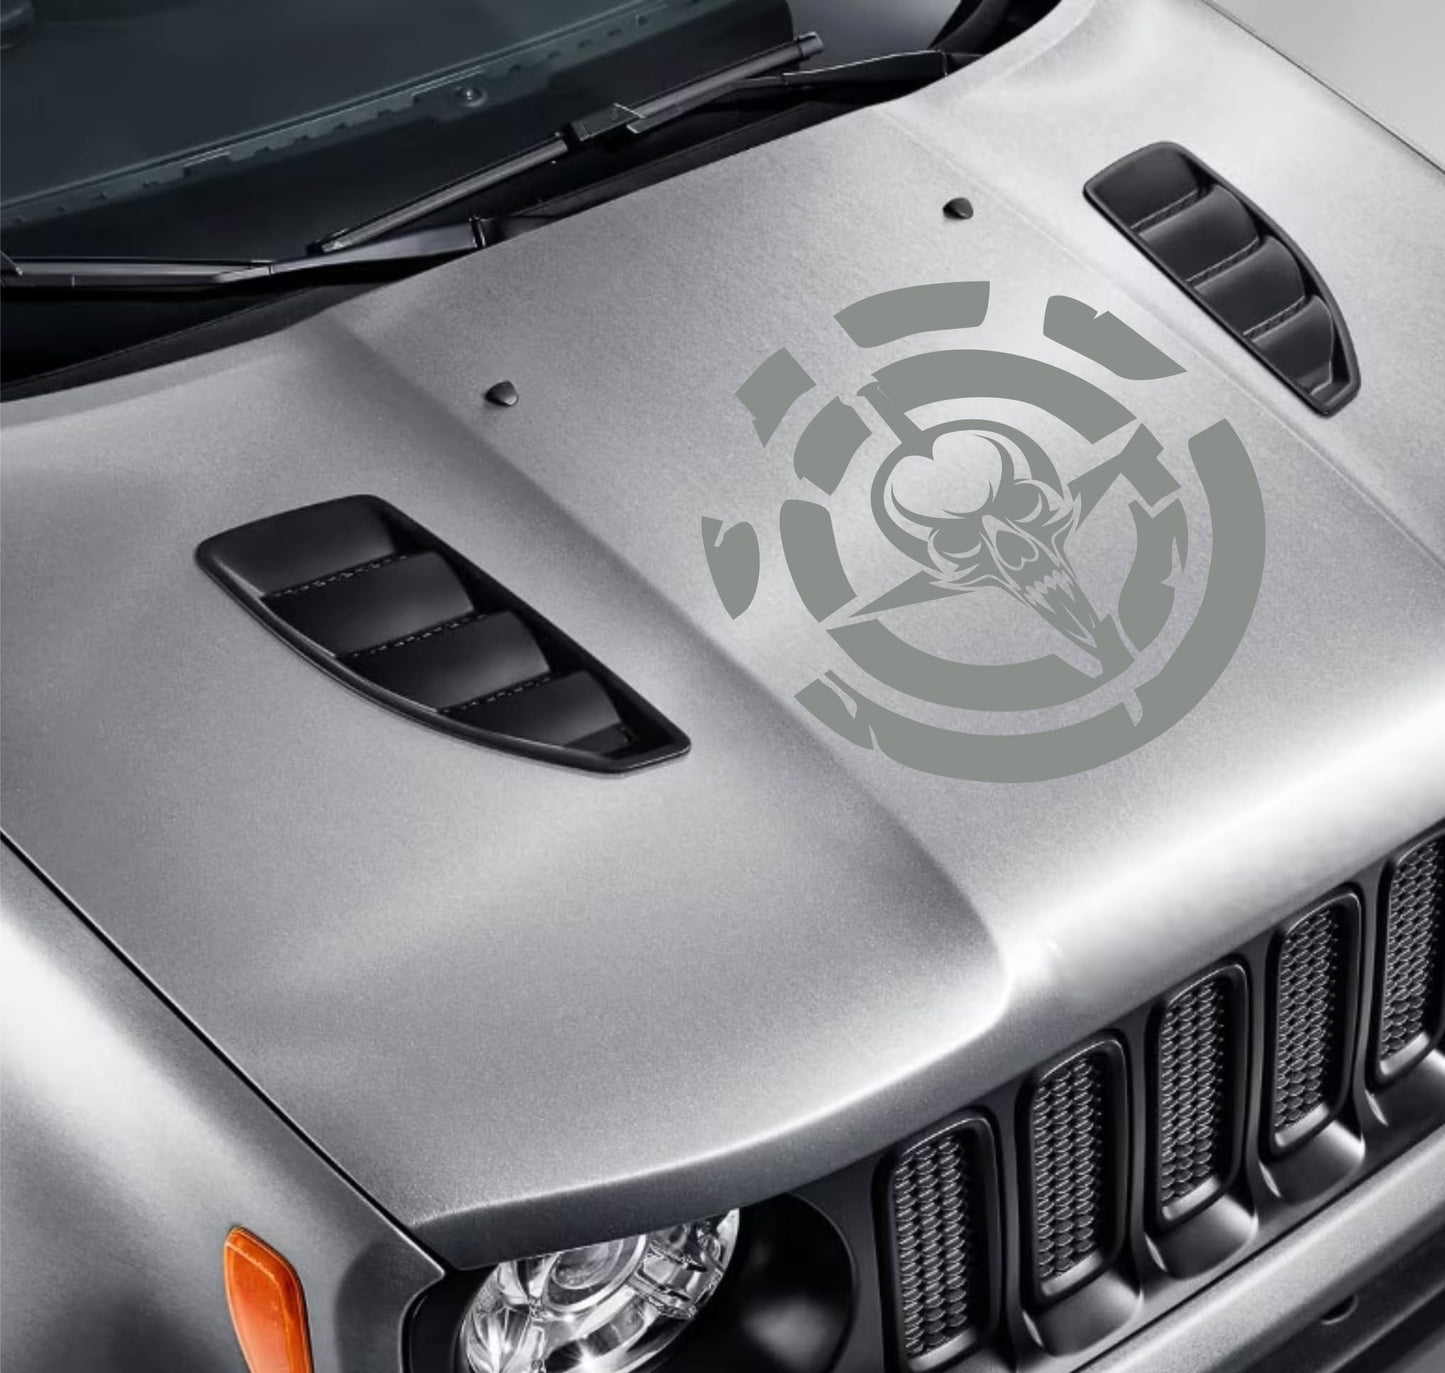 DualColorStampe Adesivo compatibile con Jeep Renegade Cofano - Fuoristrada 4X4 Fiancate Portiera anteriore Offroad Adesivi Stickers AUTO Decal Teschio spada 0344 a €35.99 solo da DualColorStampe